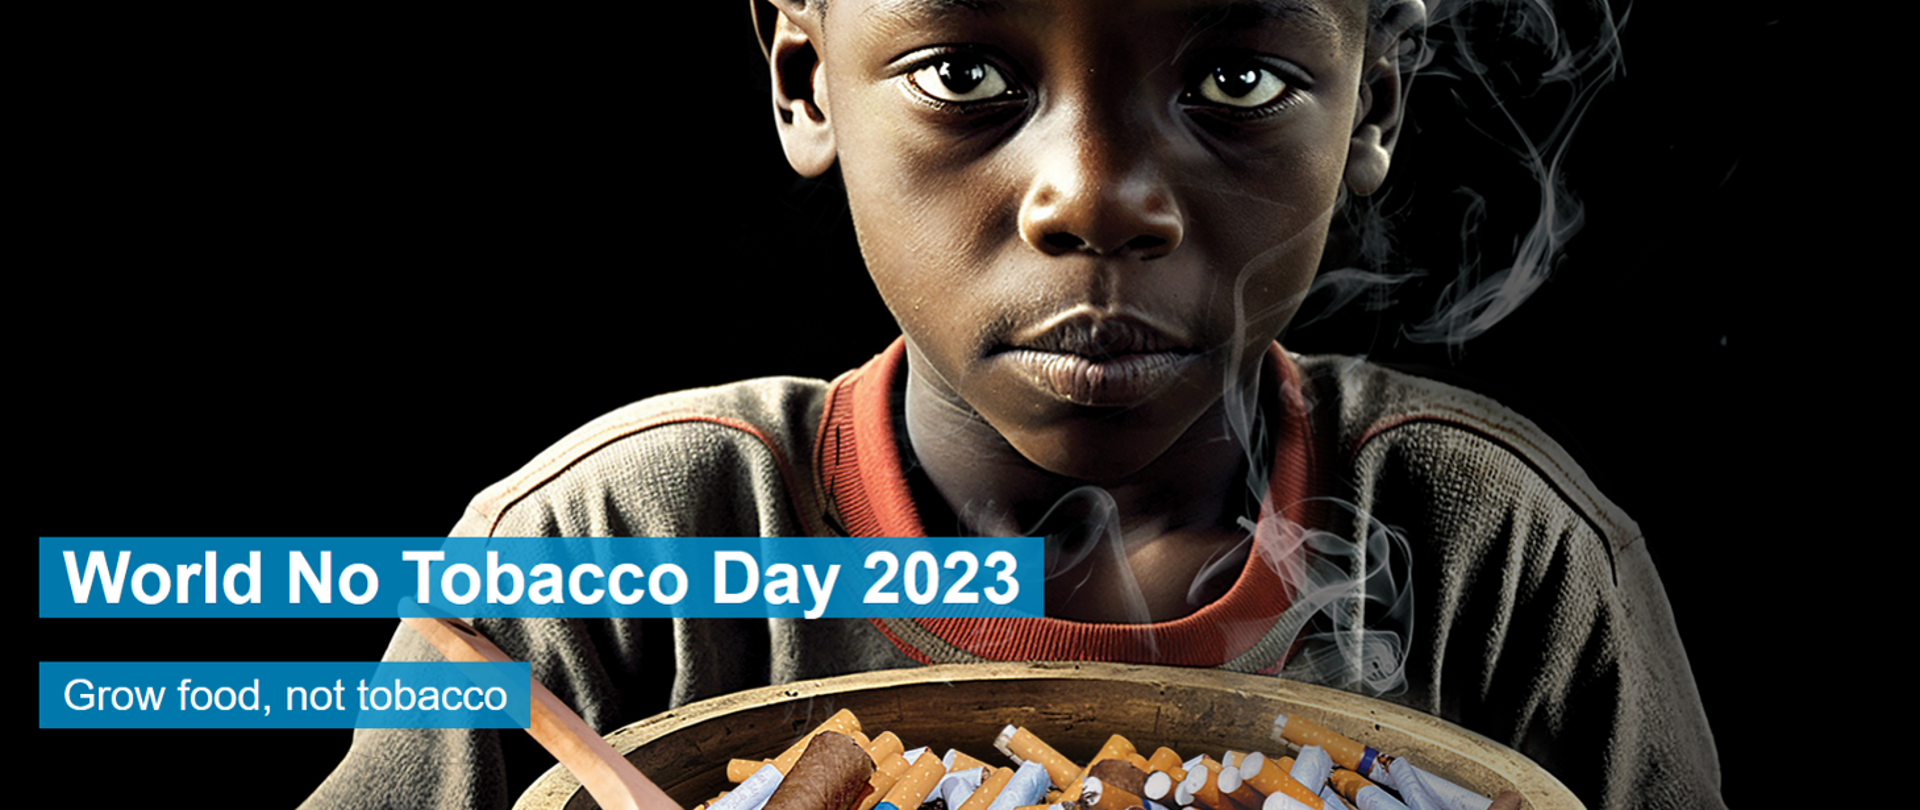 Zdjęcie dziecka trzymającego popielniczkę z niedopałkami papierosów i unoszący się dym papierosowy. napis World No Tobacco Day 2023 Grow food, not tabacco